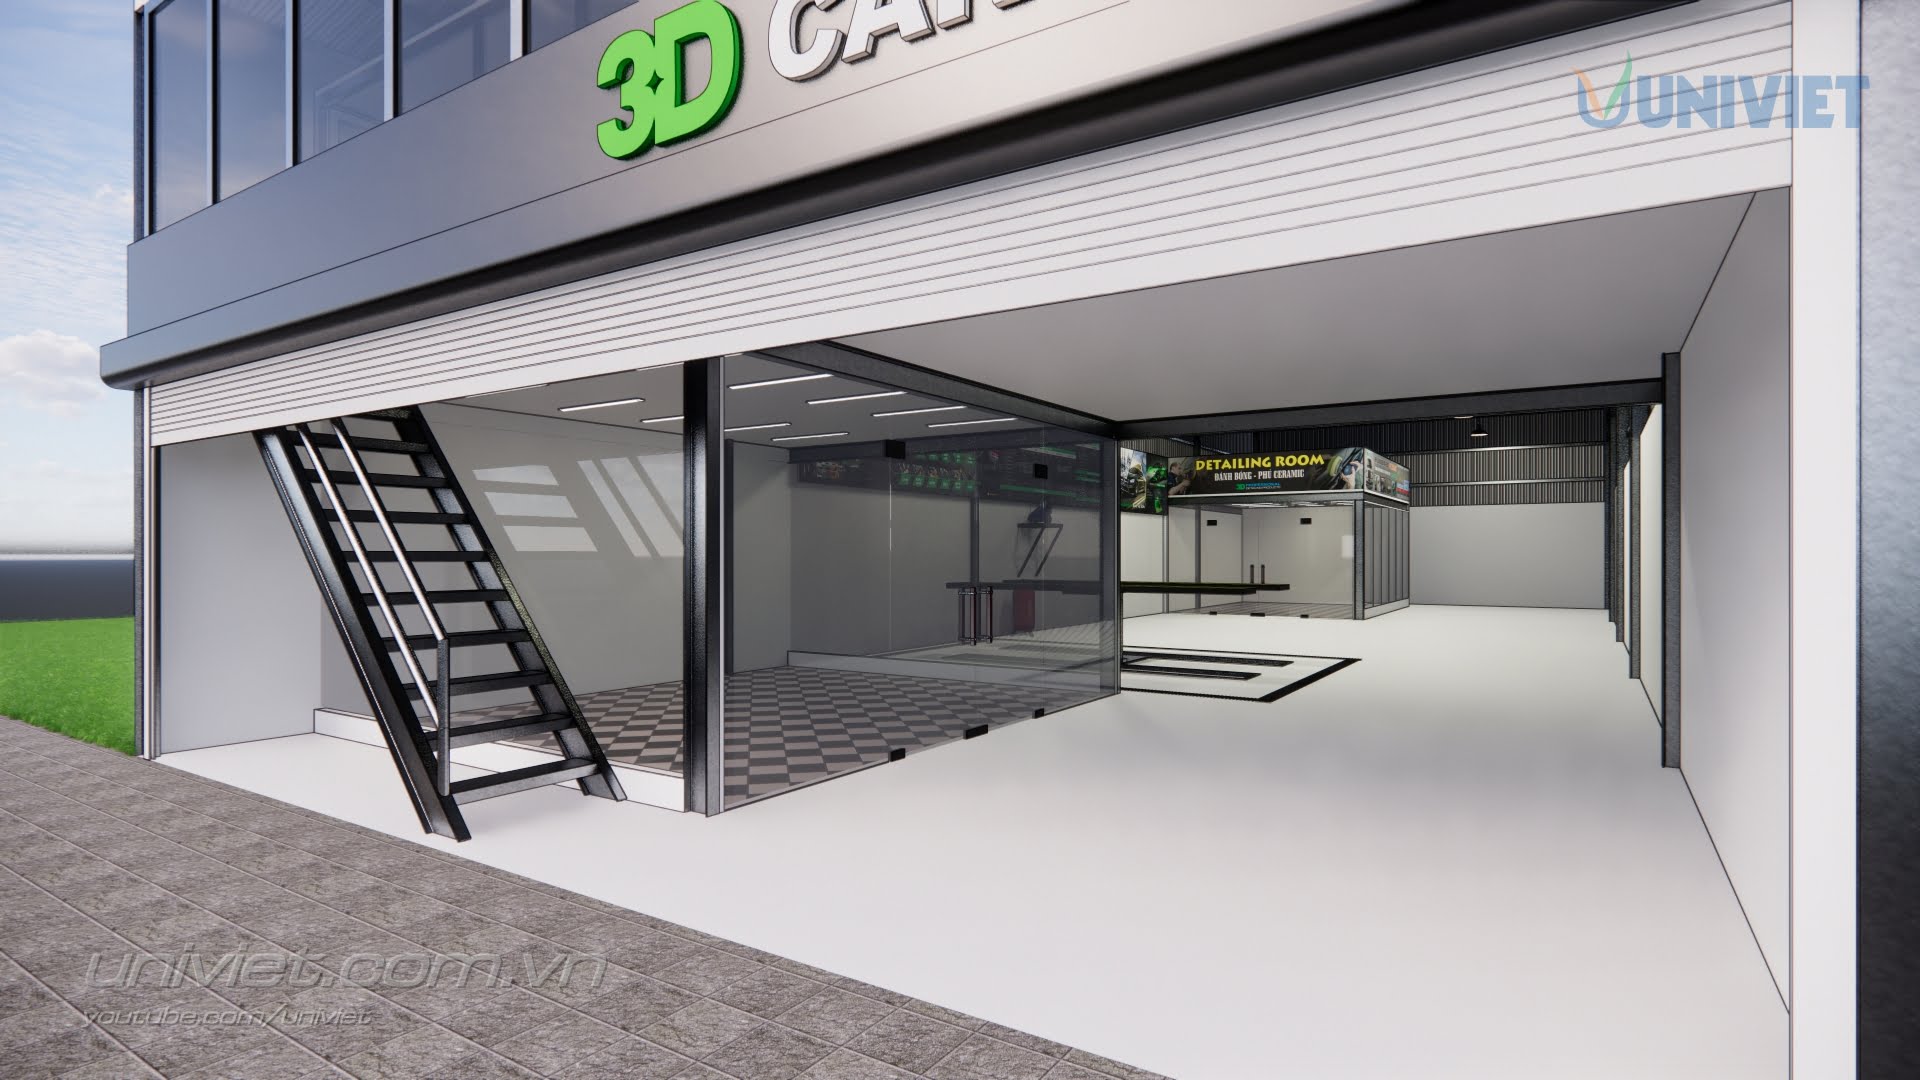 Mô hình 3D Trung tâm chăm sóc xe chuyên nghiệp tại An Giang